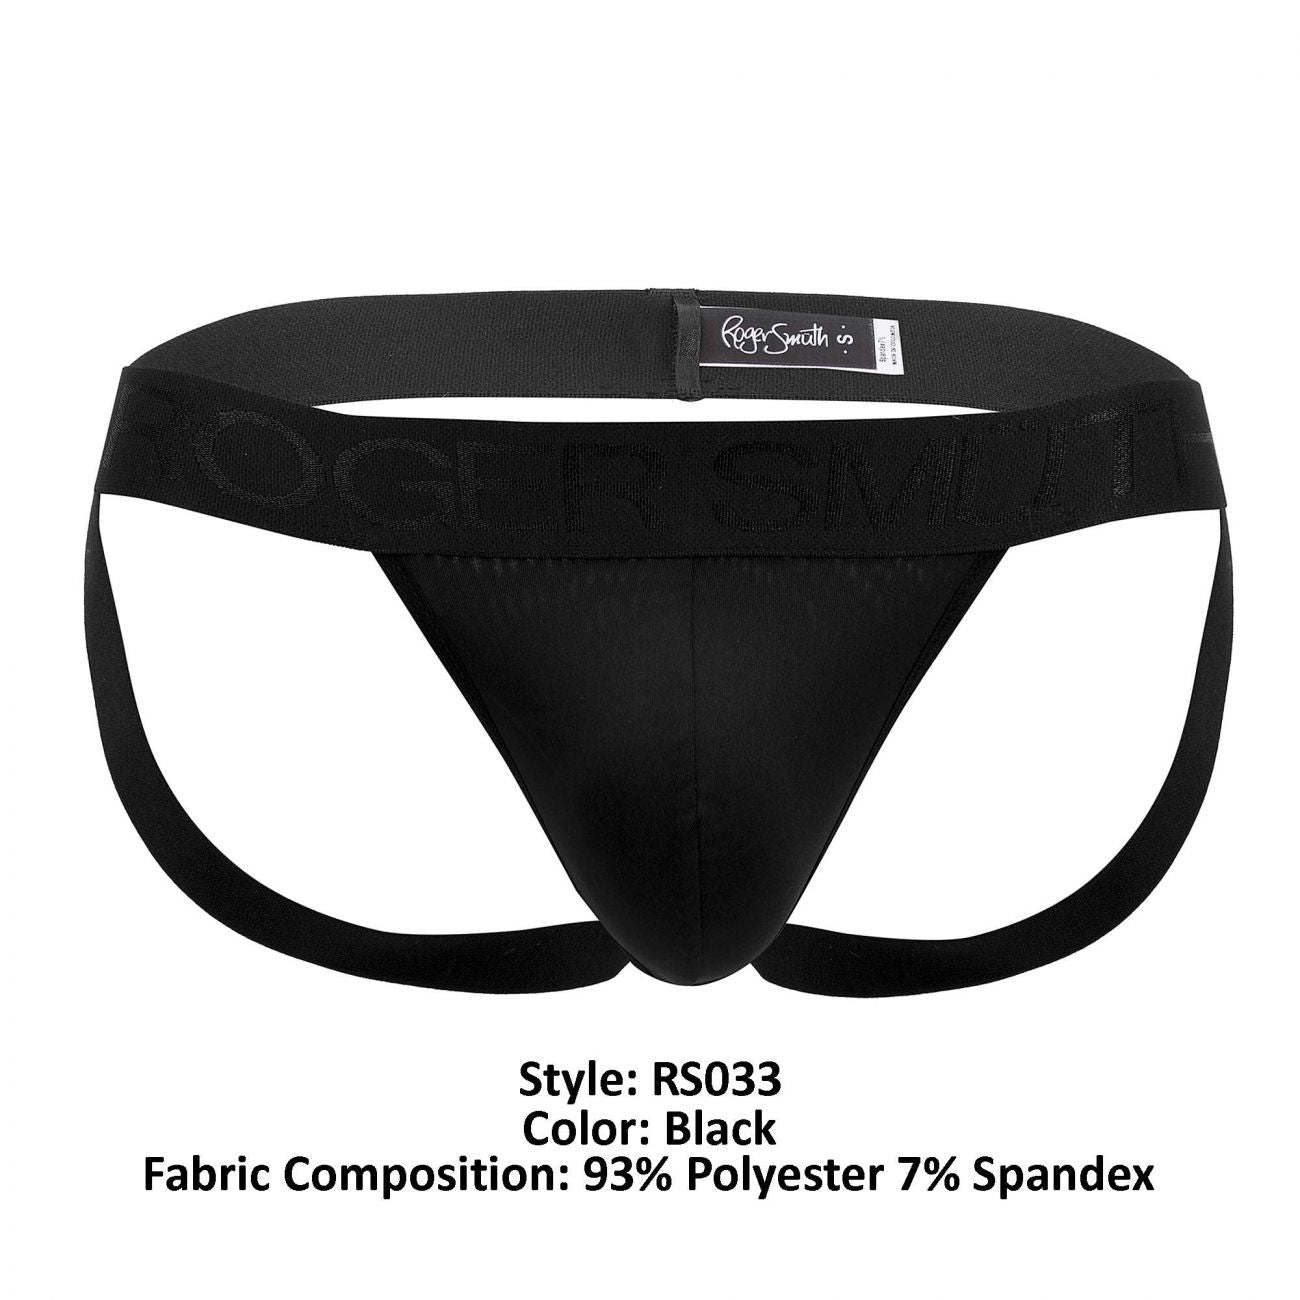 Roger Smuth RS033 Jockstrap Color Black